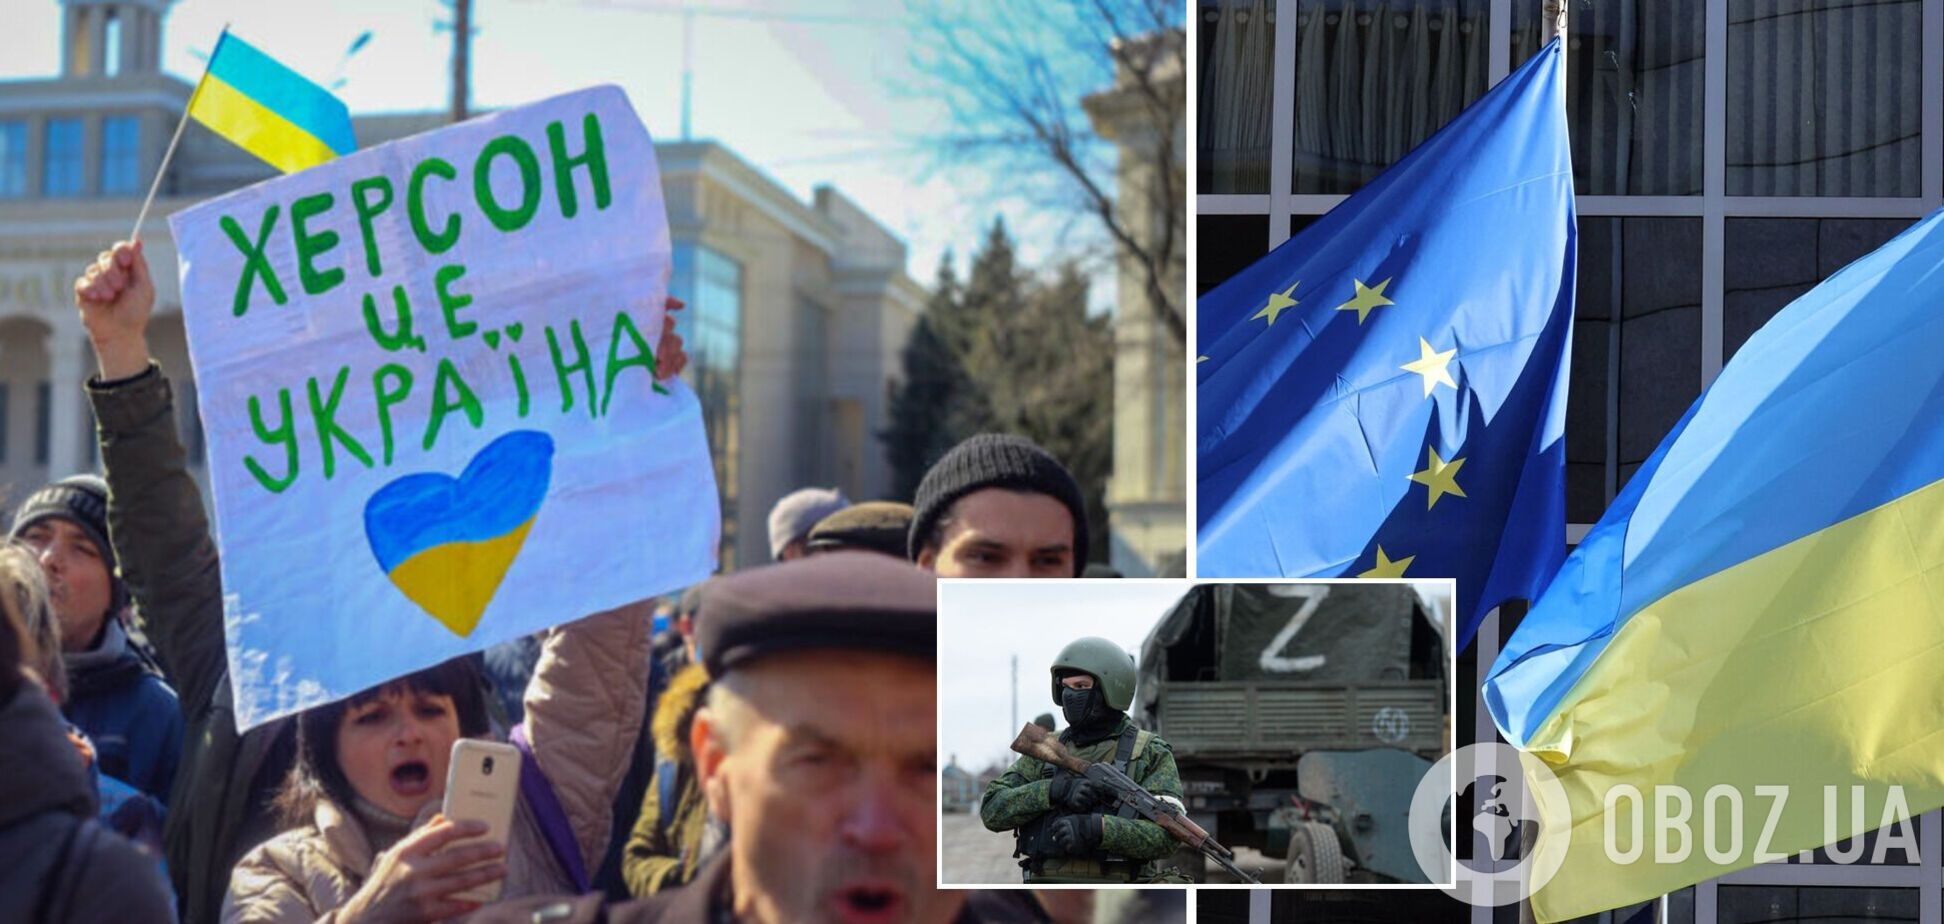 ЕС не признает никаких 'референдумов', которые Россия попытается провести в Украине: заявление